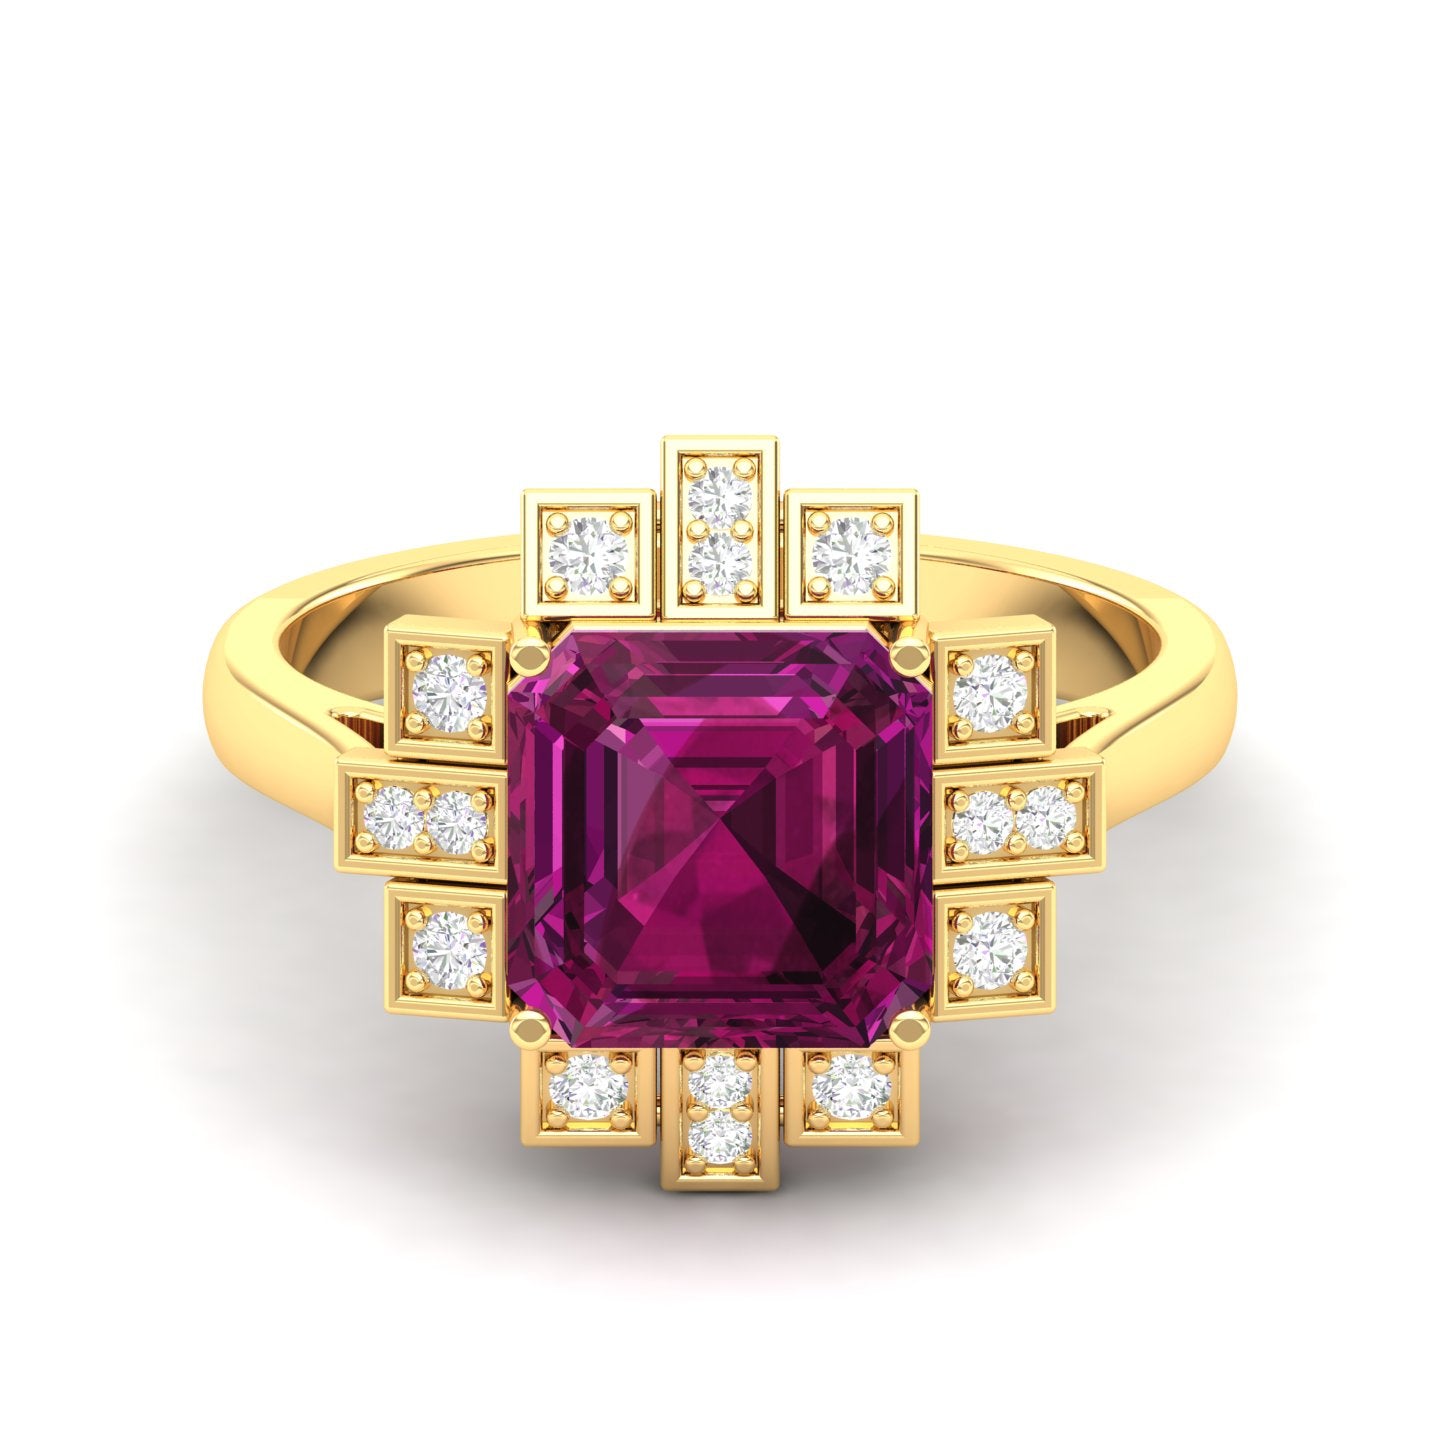 Maurya Asscher Cut Garnet Solitaire Firecracker Engagement Ring with Diamonds